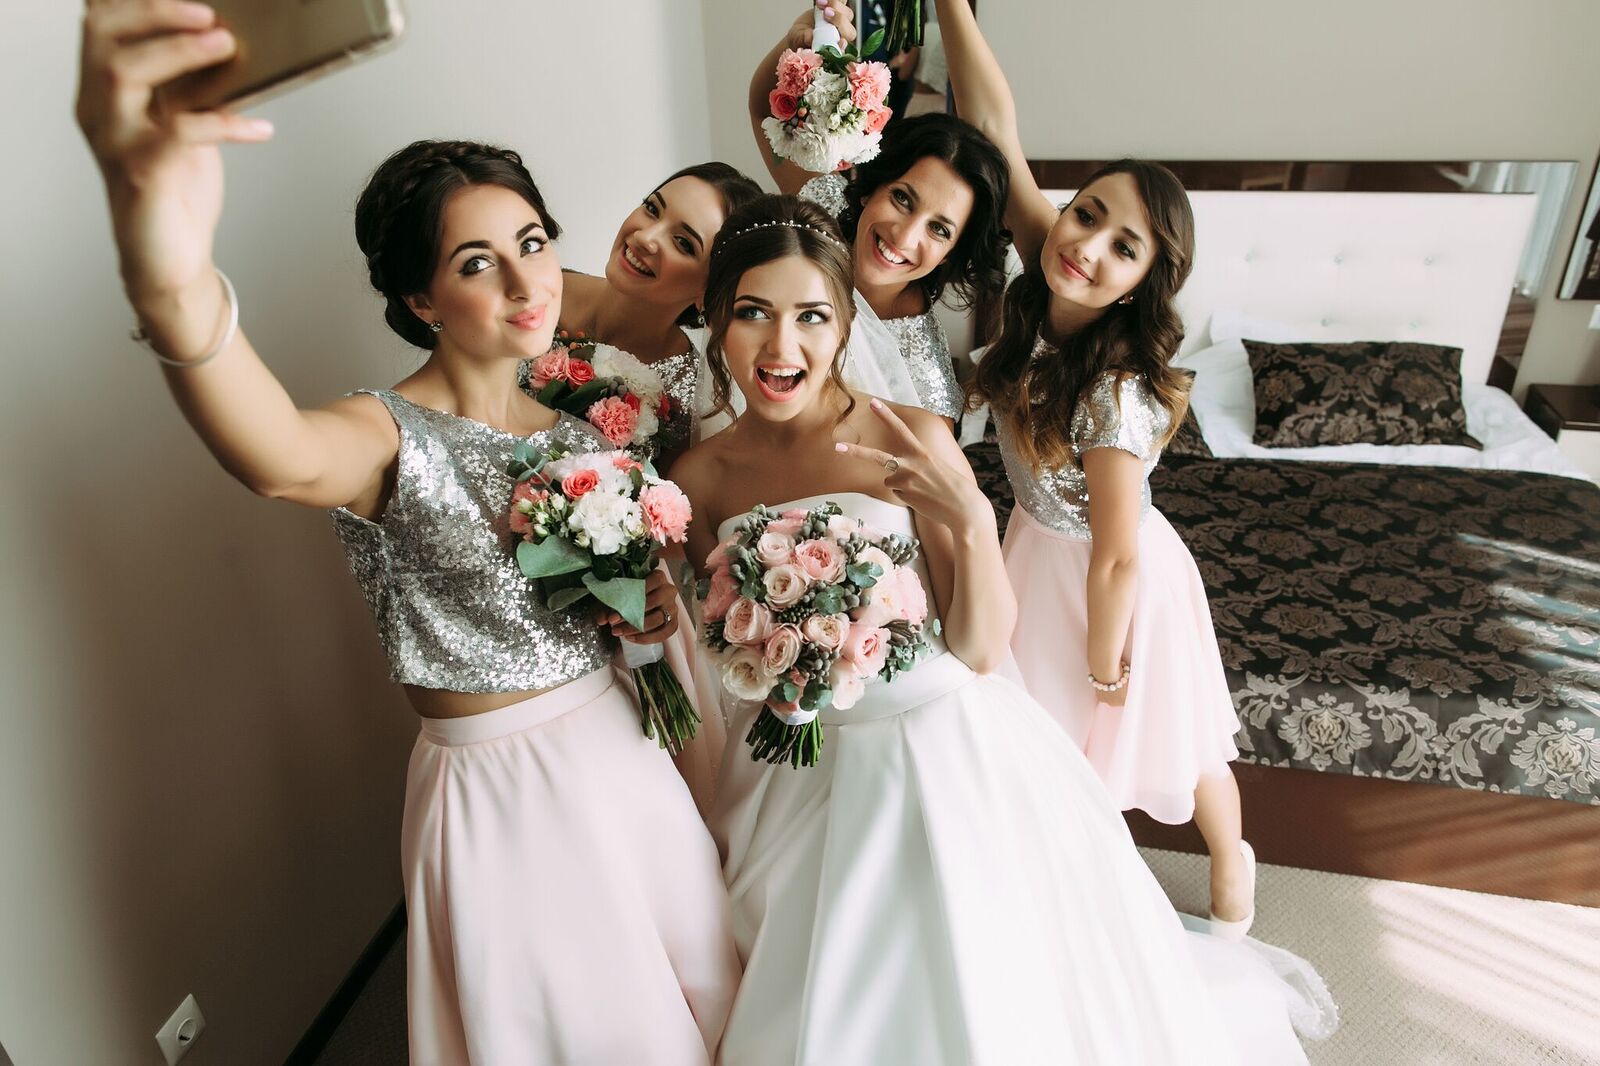 bride-and-bridesmaids-social-media